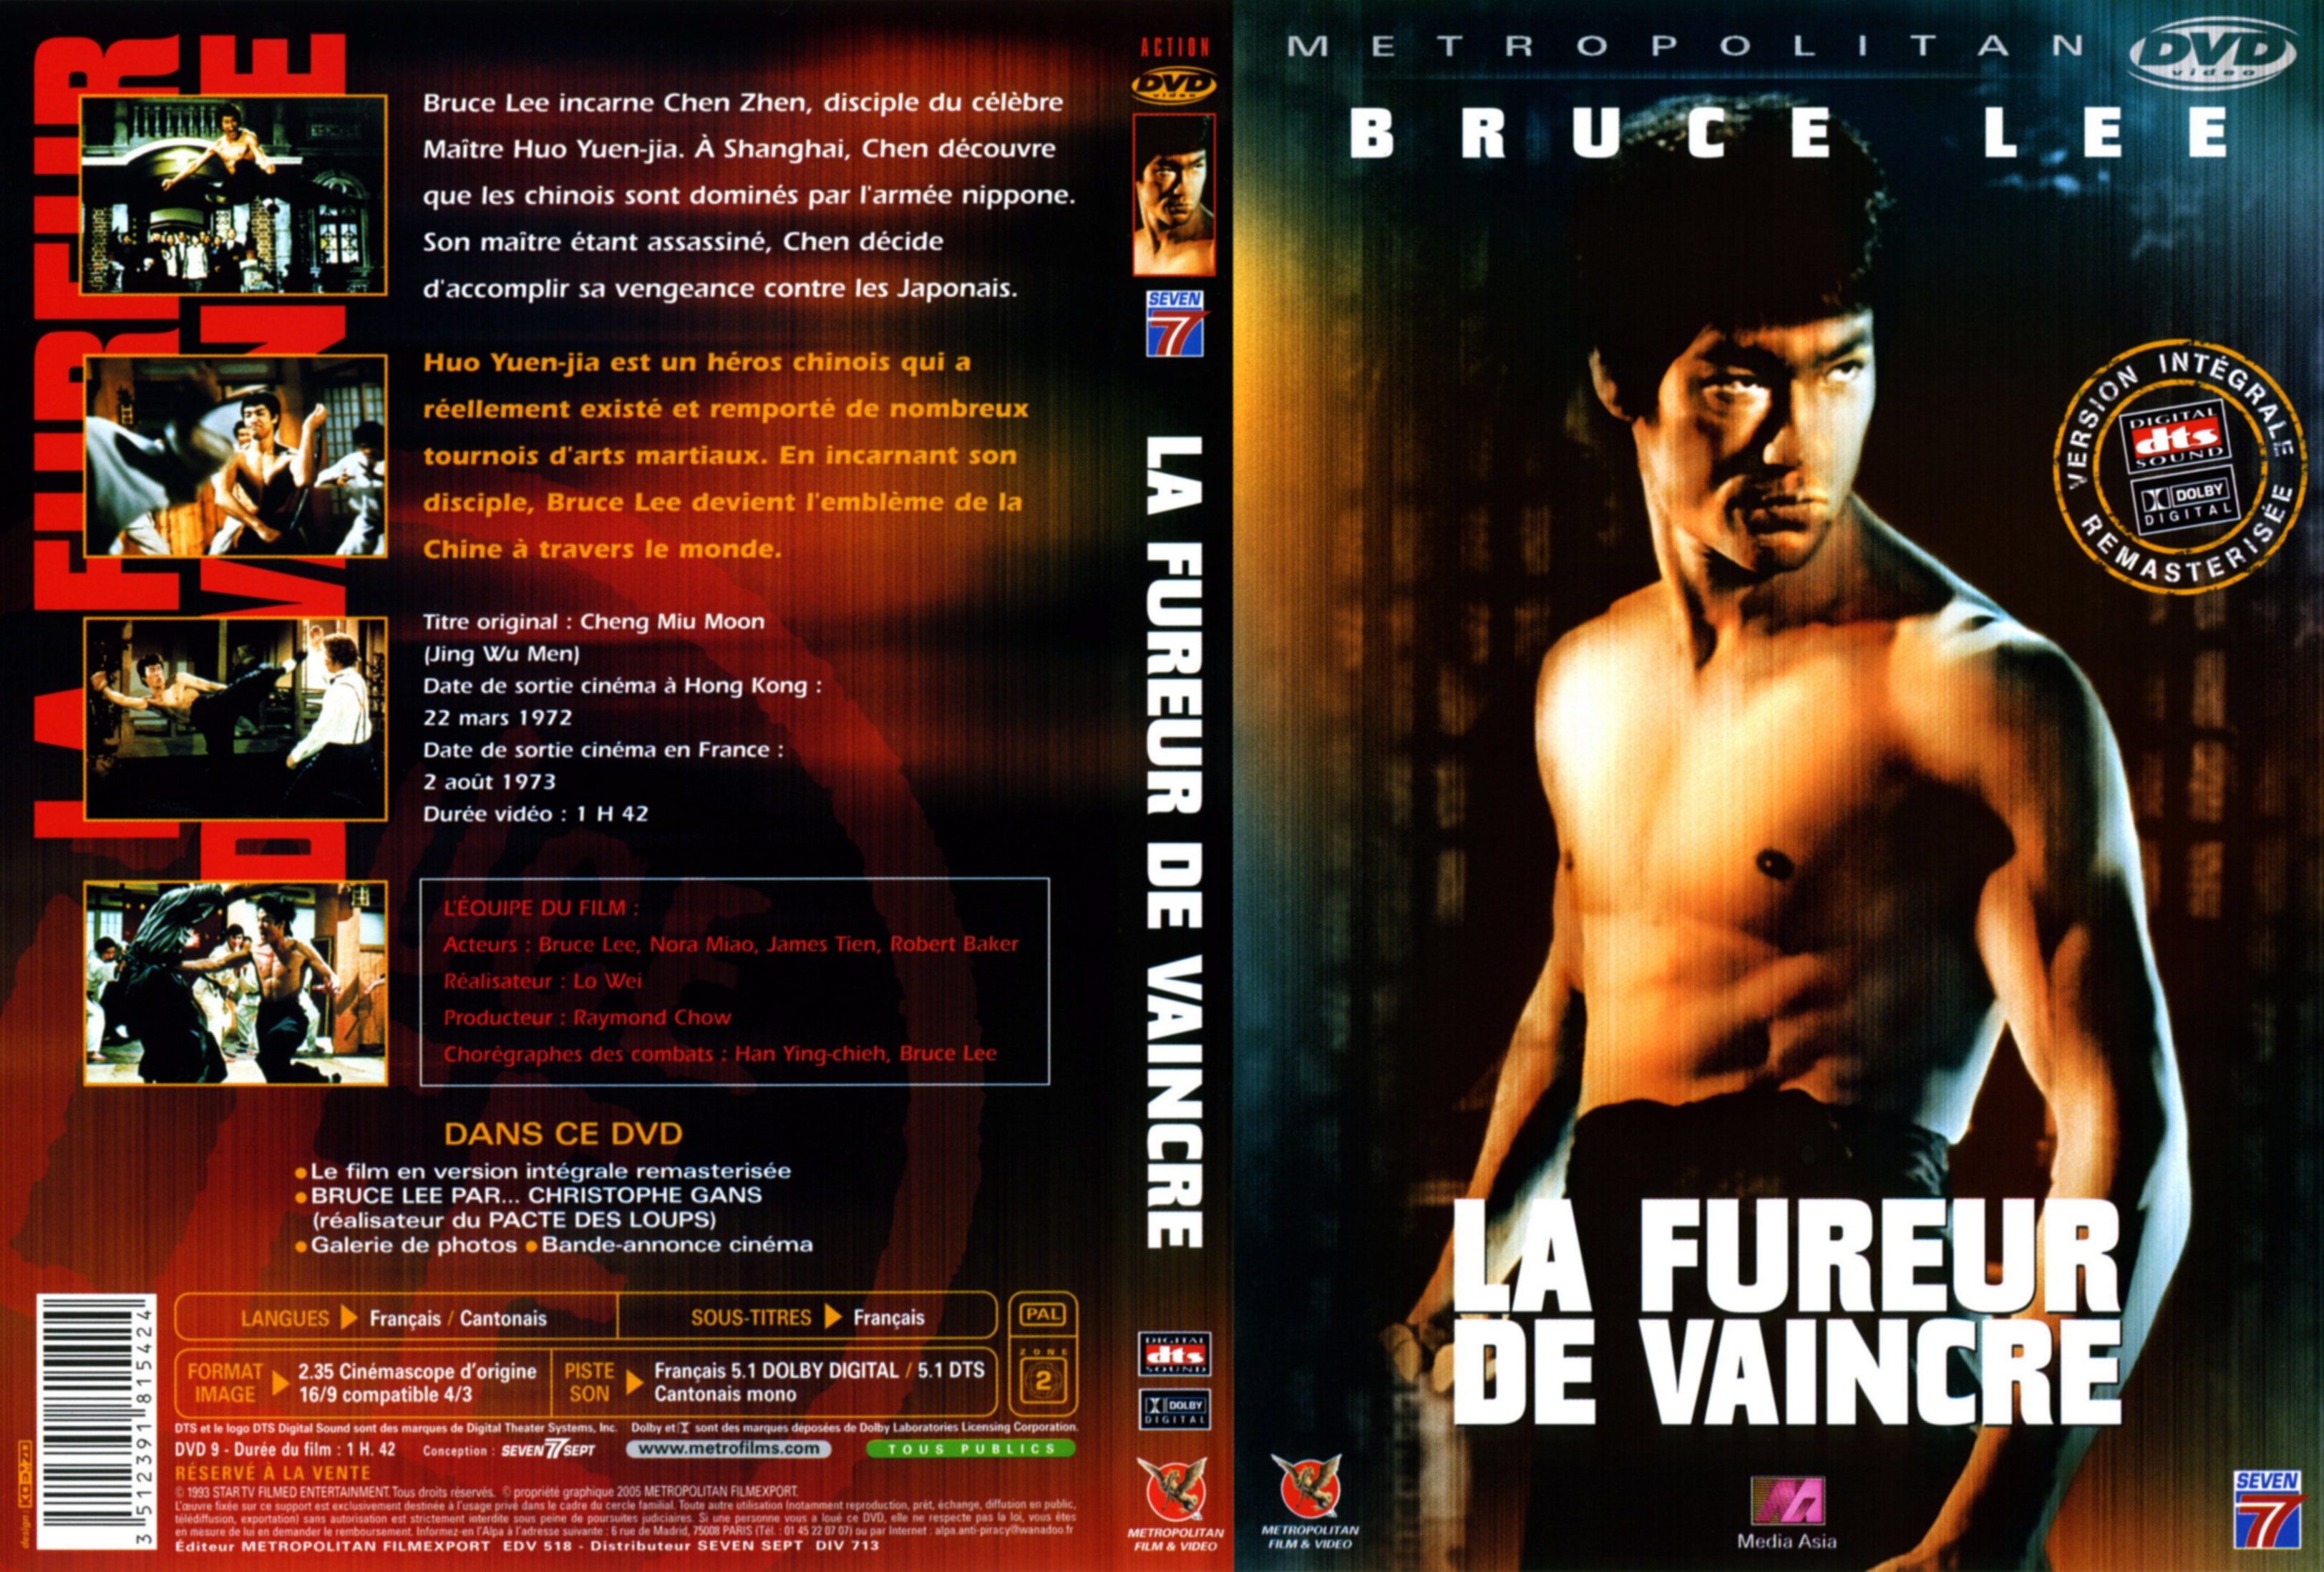 Jaquette DVD La fureur de vaincre v3